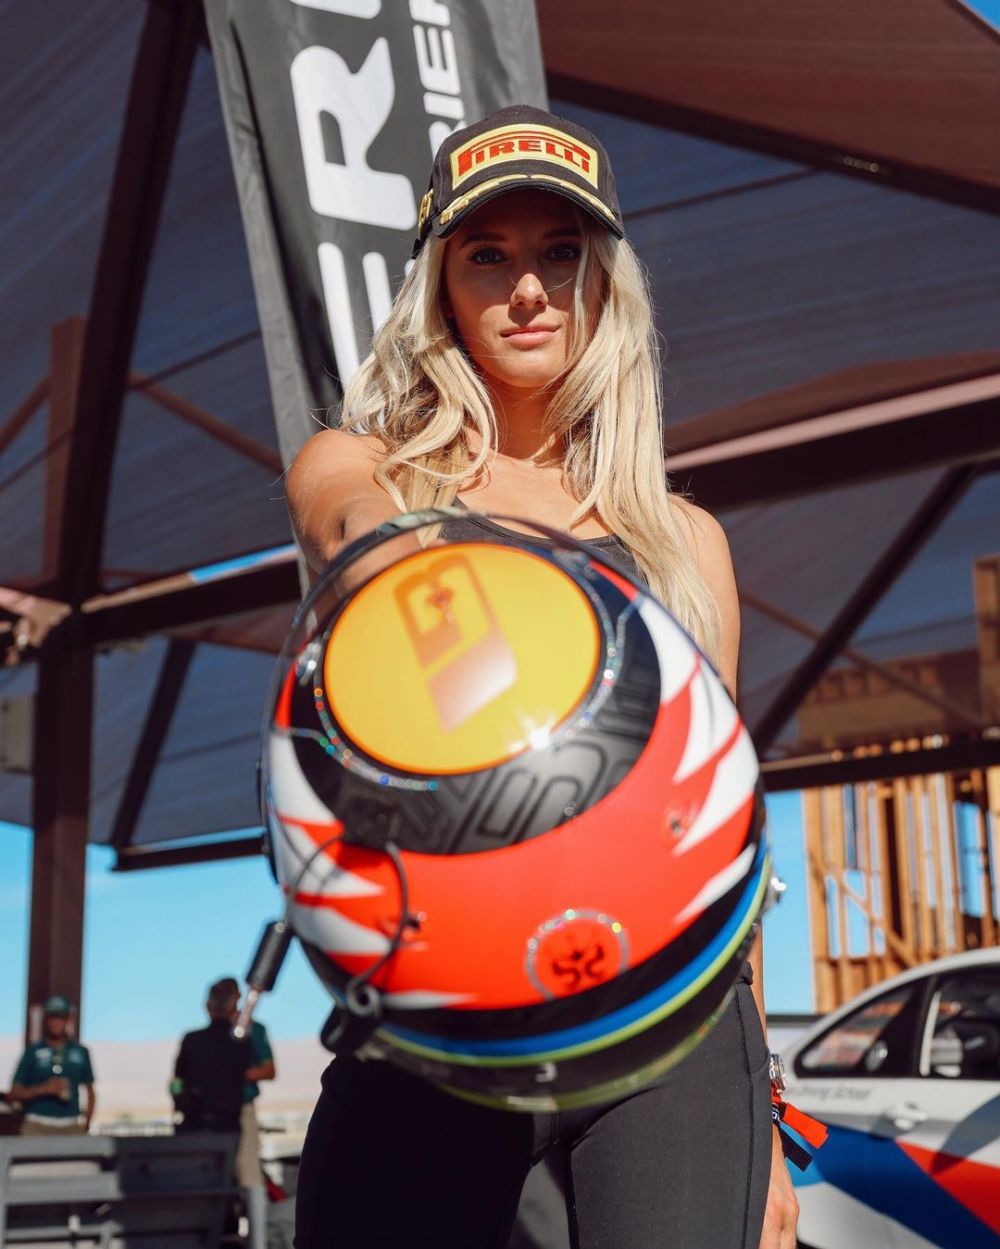 "O altă blondă fraieră!". Pilotul de IndyCar care dărâmă stereotipuri, apariție spectaculoasă în vacanță _25